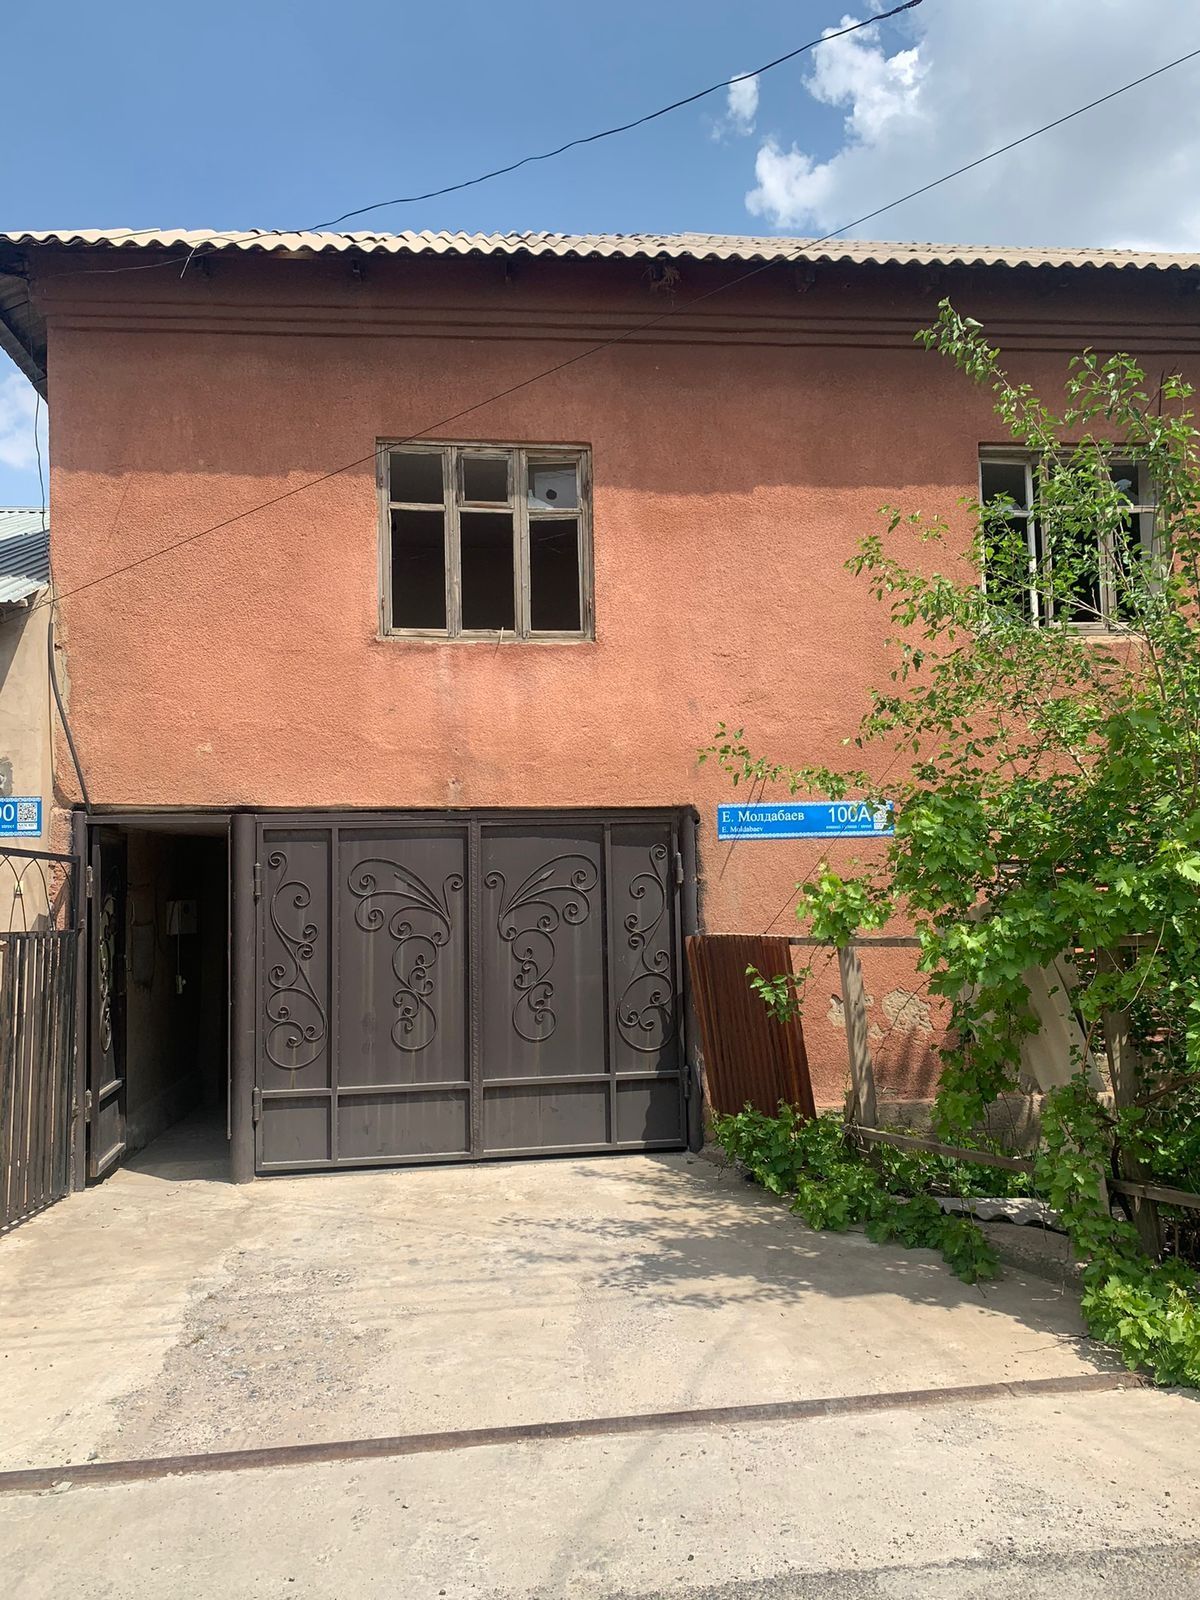 Дом районе тельмана по ул. Молдабаева дом старый т. к давно не жили ..